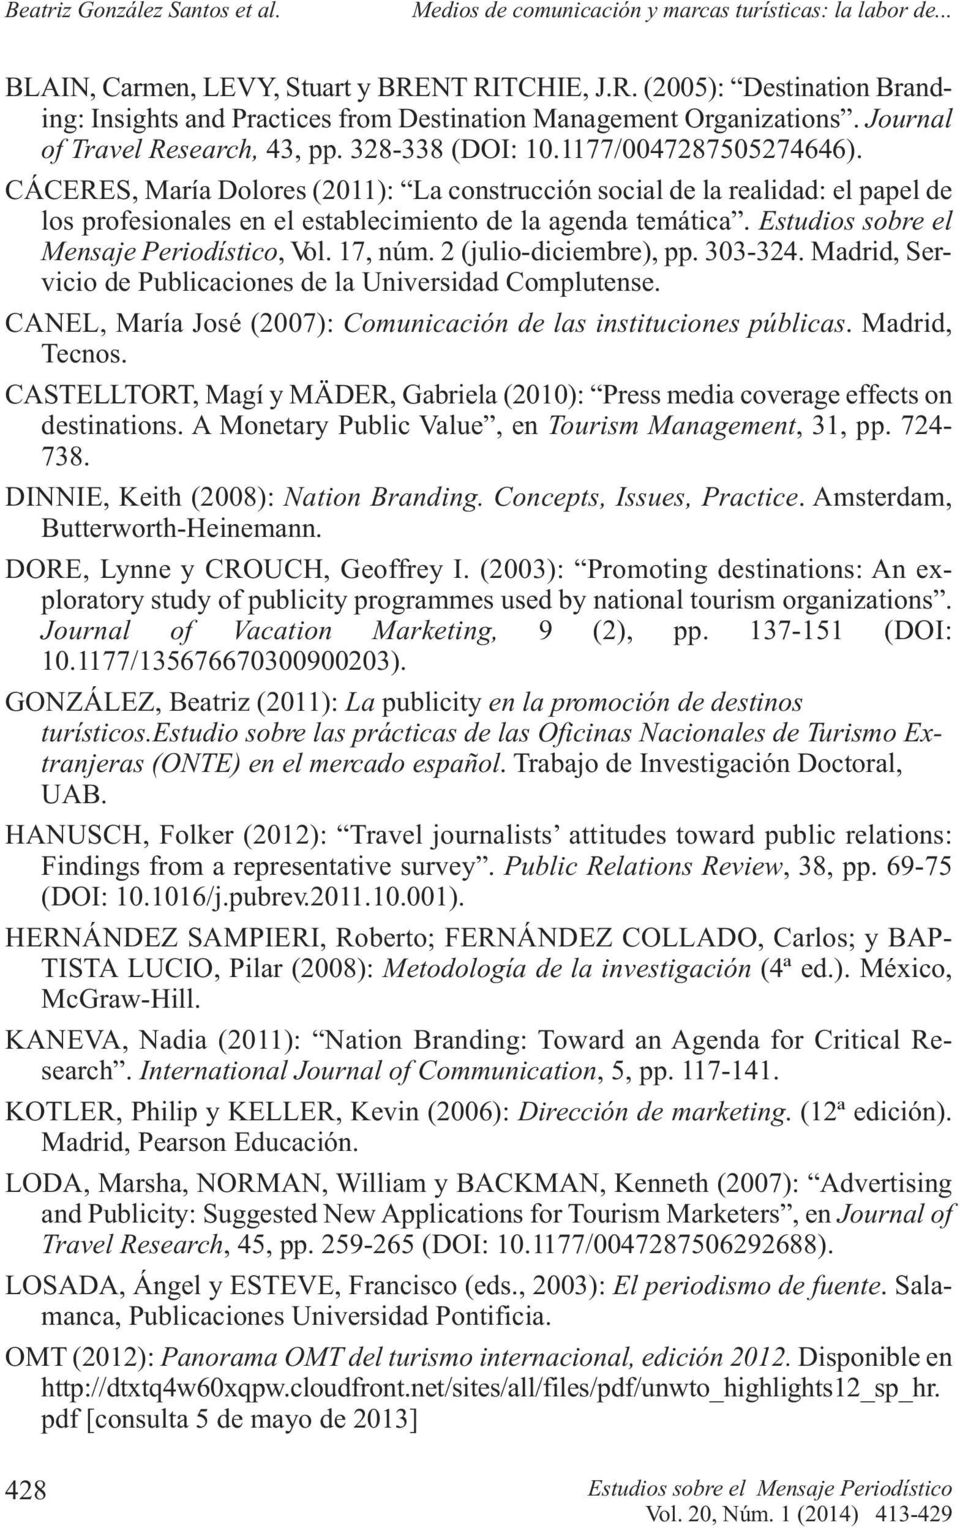 Estudios sobre el Mensaje Periodístico, Vol. 17, núm. 2 (julio diciembre), pp. 303 324. Madrid, Servicio de Publicaciones de la Universidad Complutense.